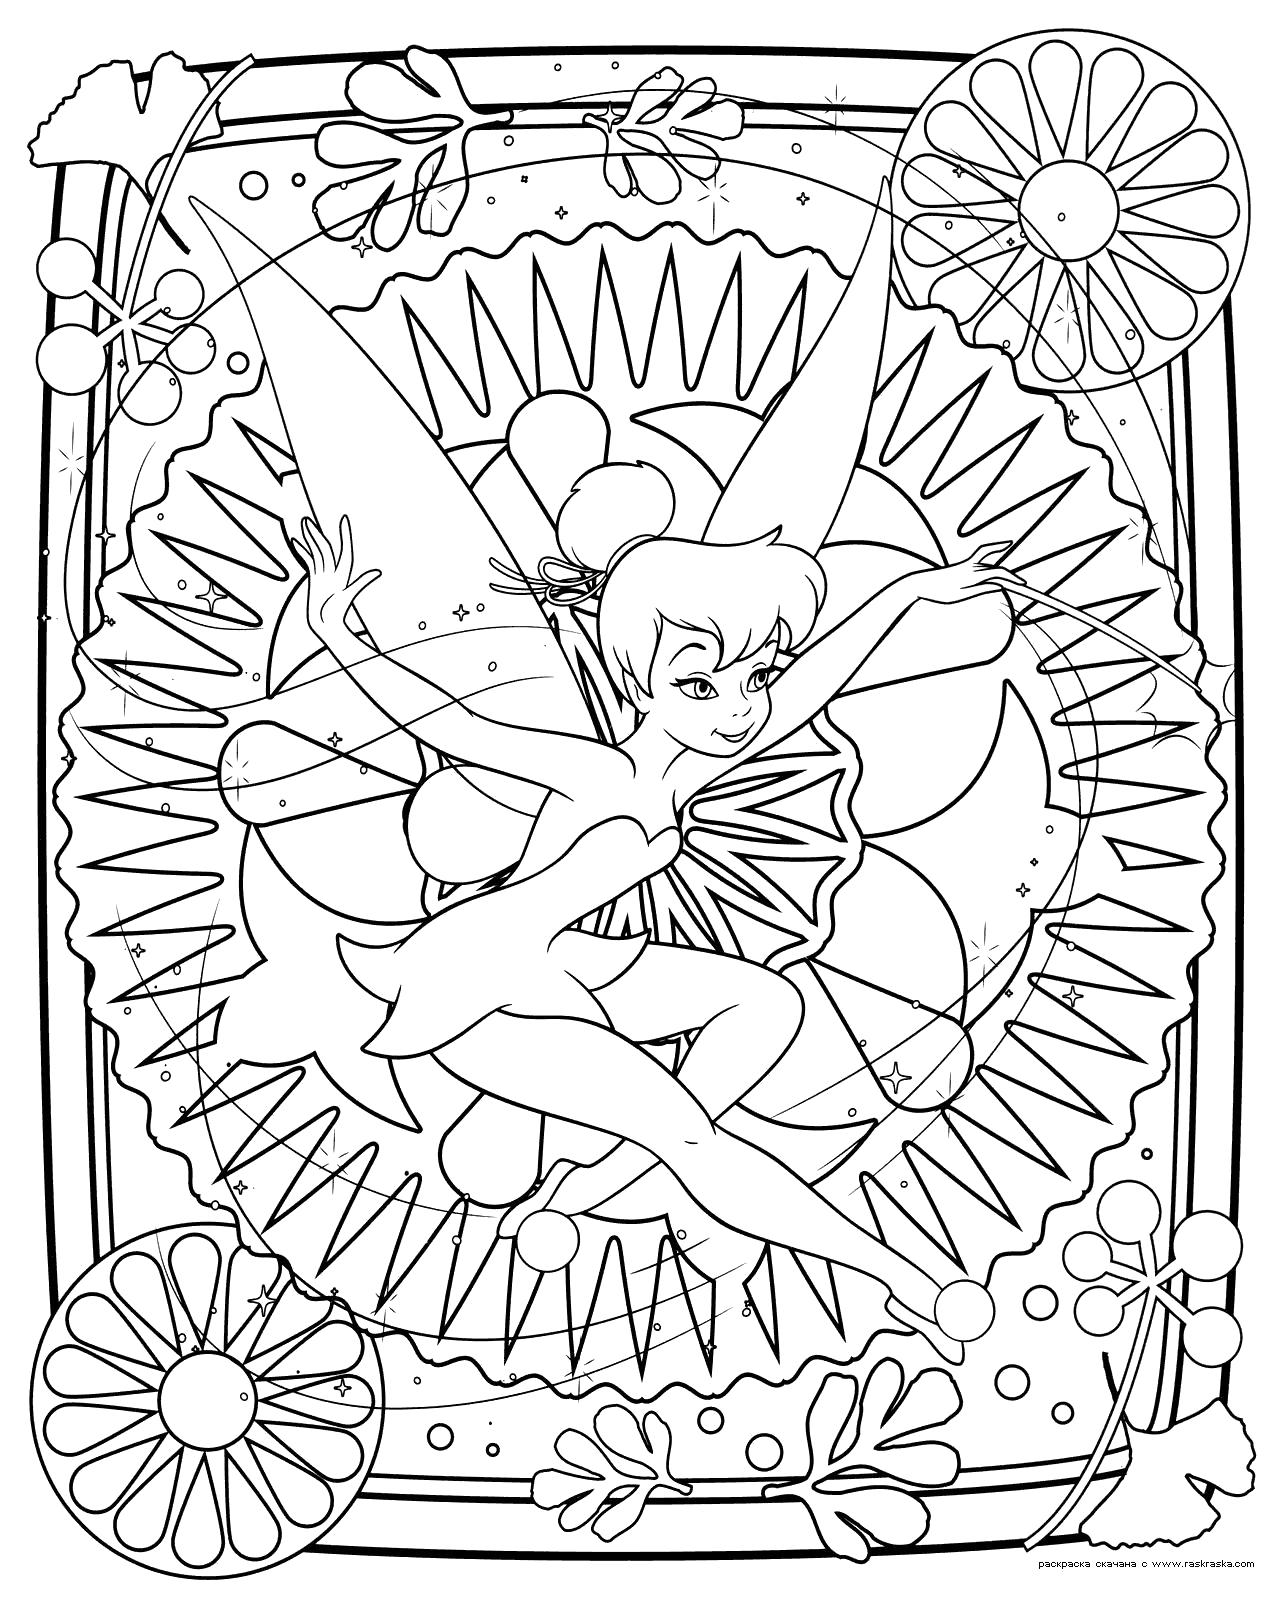 Раскраска Раскраска Раскраска феи Динь-Динь. Раскраска Разукрашка из мультфильма Феи. Раскраска для девочек Динь-Динь - это маленькая фея. мифические существа